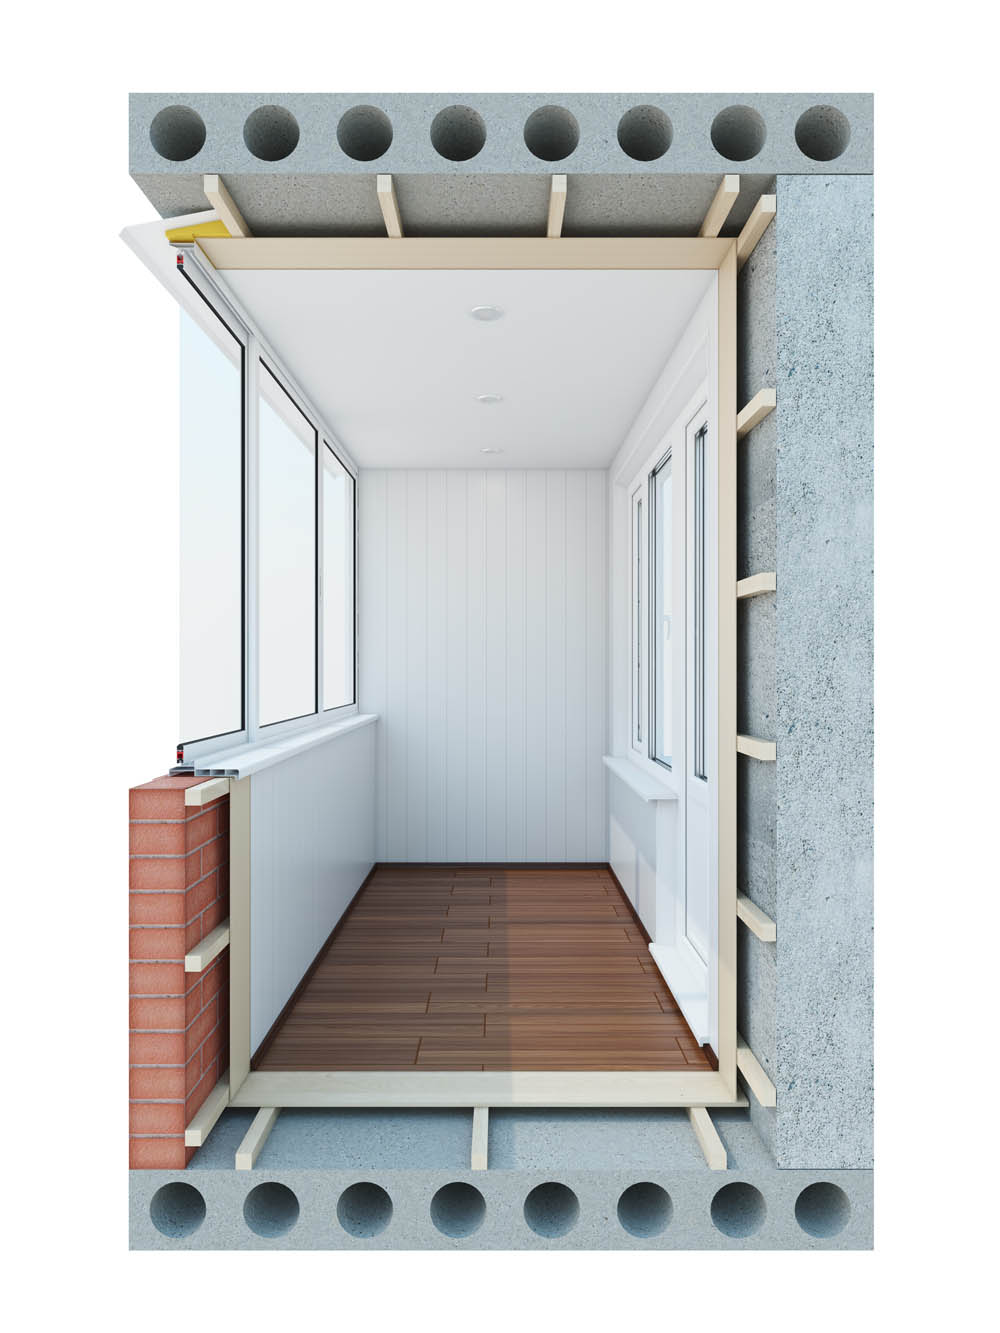 Одна з рам встановлюється на зсувний системі, що дозволяє забезпечити вентиляцію балкона і поєднаної з ним кімнати